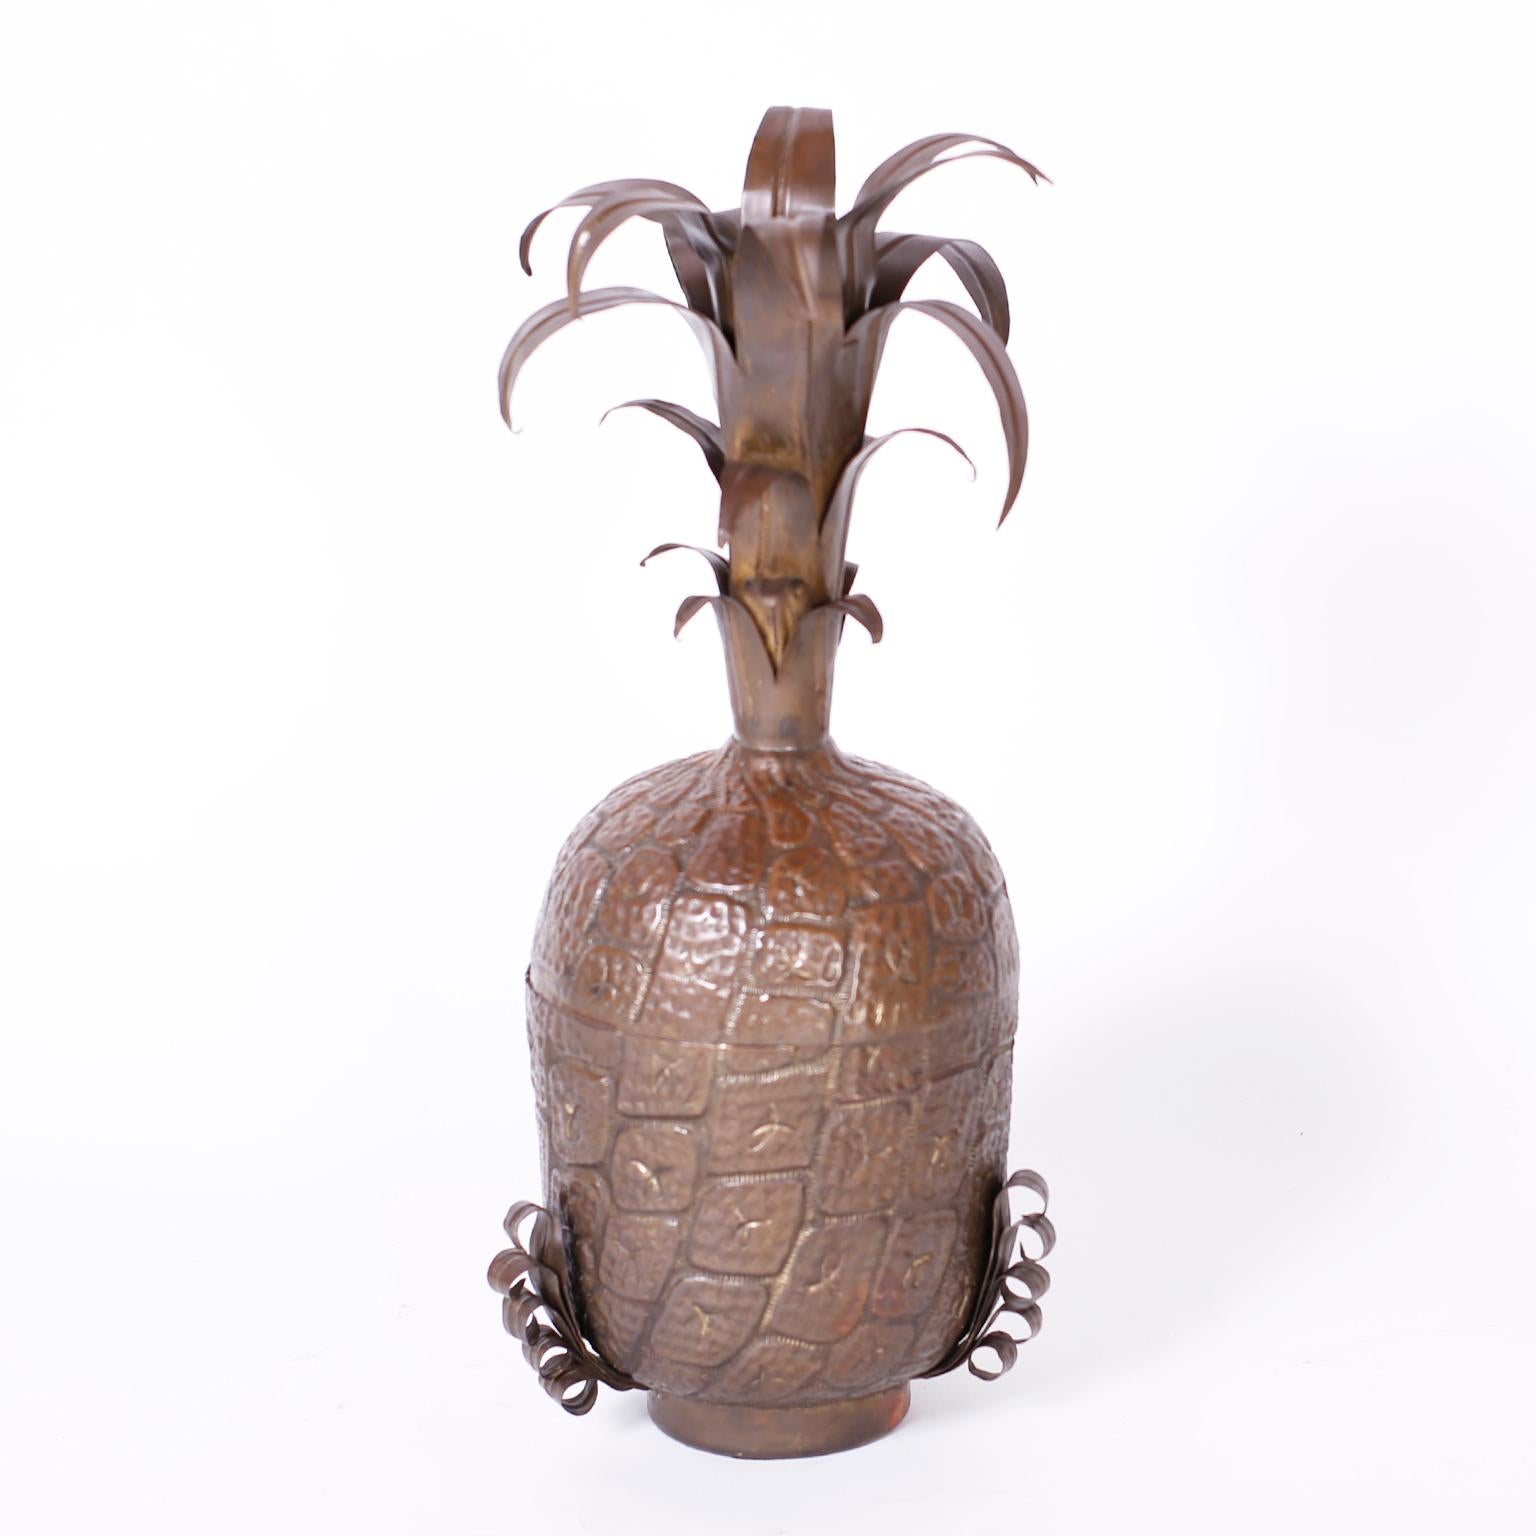 Die Ananas mit Deckel aus der Mitte des Jahrhunderts wurde fachmännisch aus Kupfer gefertigt, von Hand gehämmert und mit stilisierten Blättern verziert und behält ihre bronzeartige Patina.